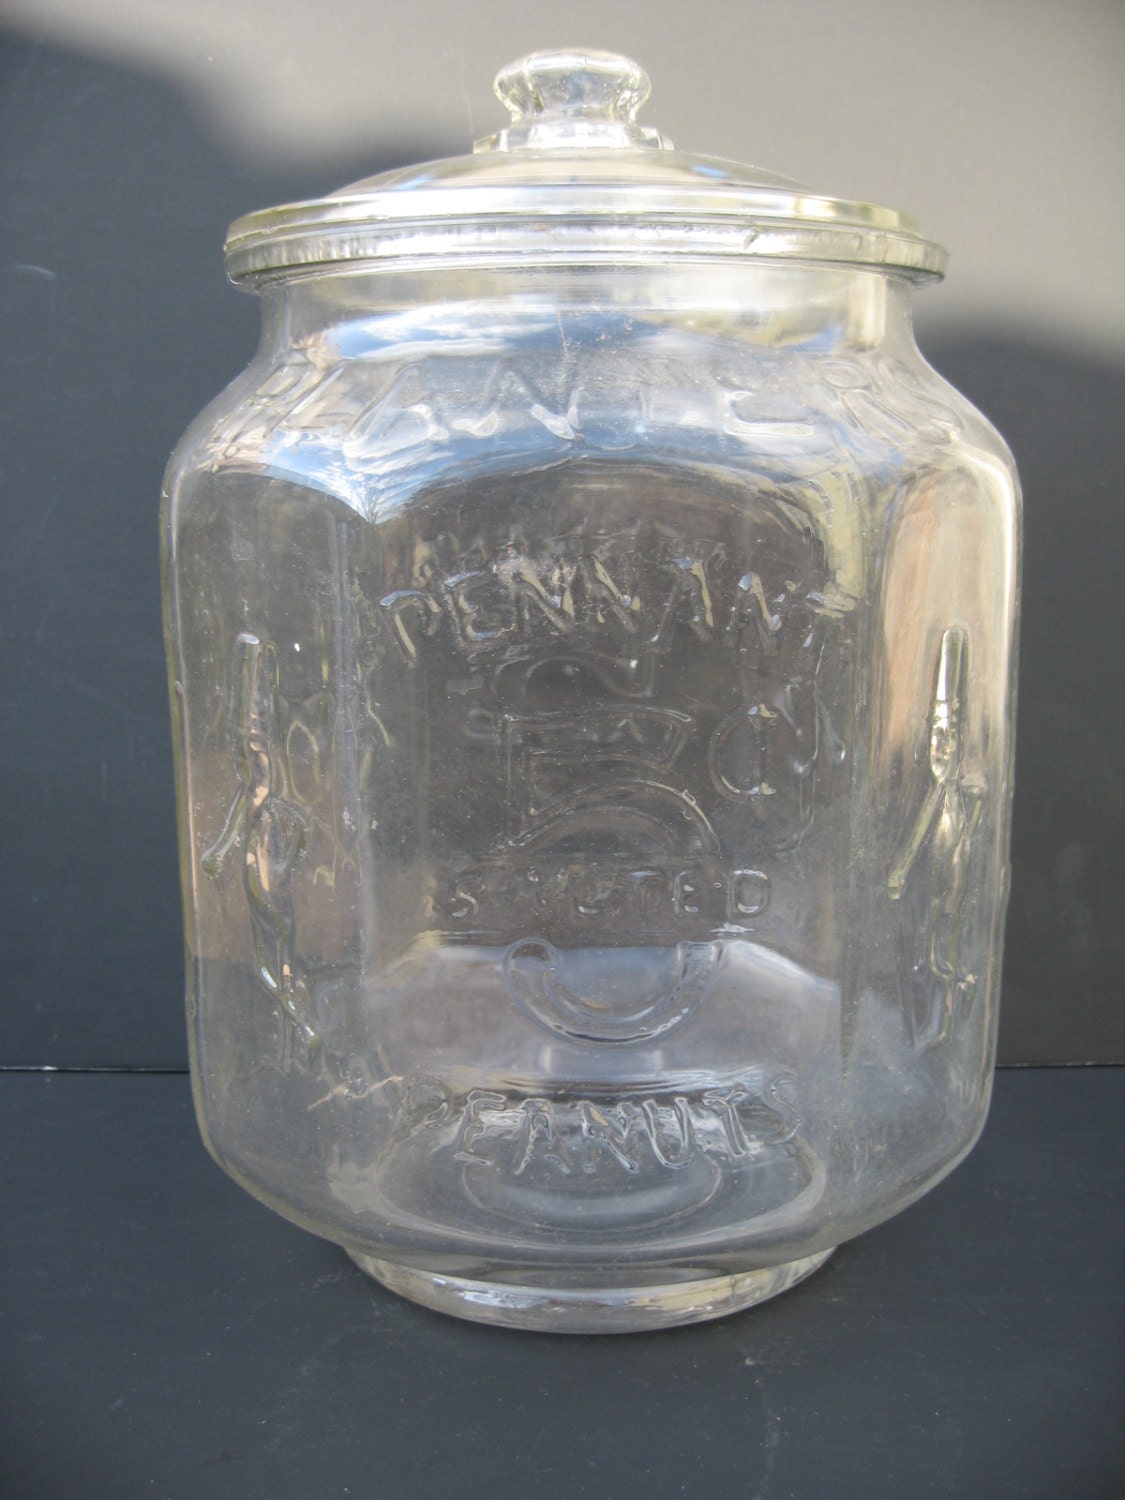 Vintage Planters Pennant Salted Peanuts Jar